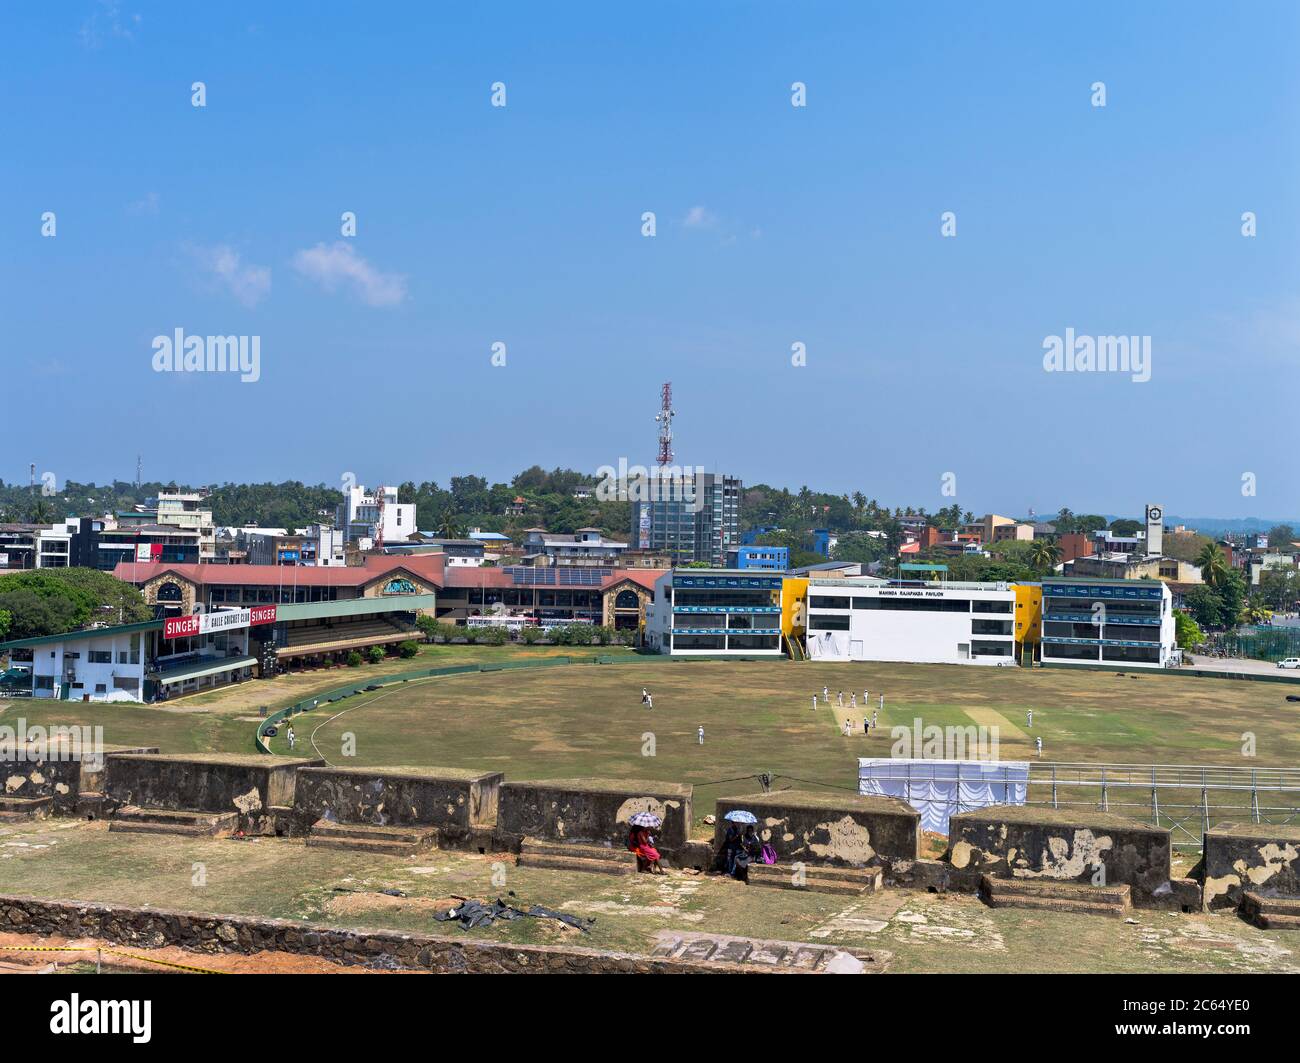 dh Galle Cricket Club Ground GALLE FORT SRI LANKA Menschen auf Festung Wälle über Blick Sri lanka Grillen Stadion Spiel Stockfoto